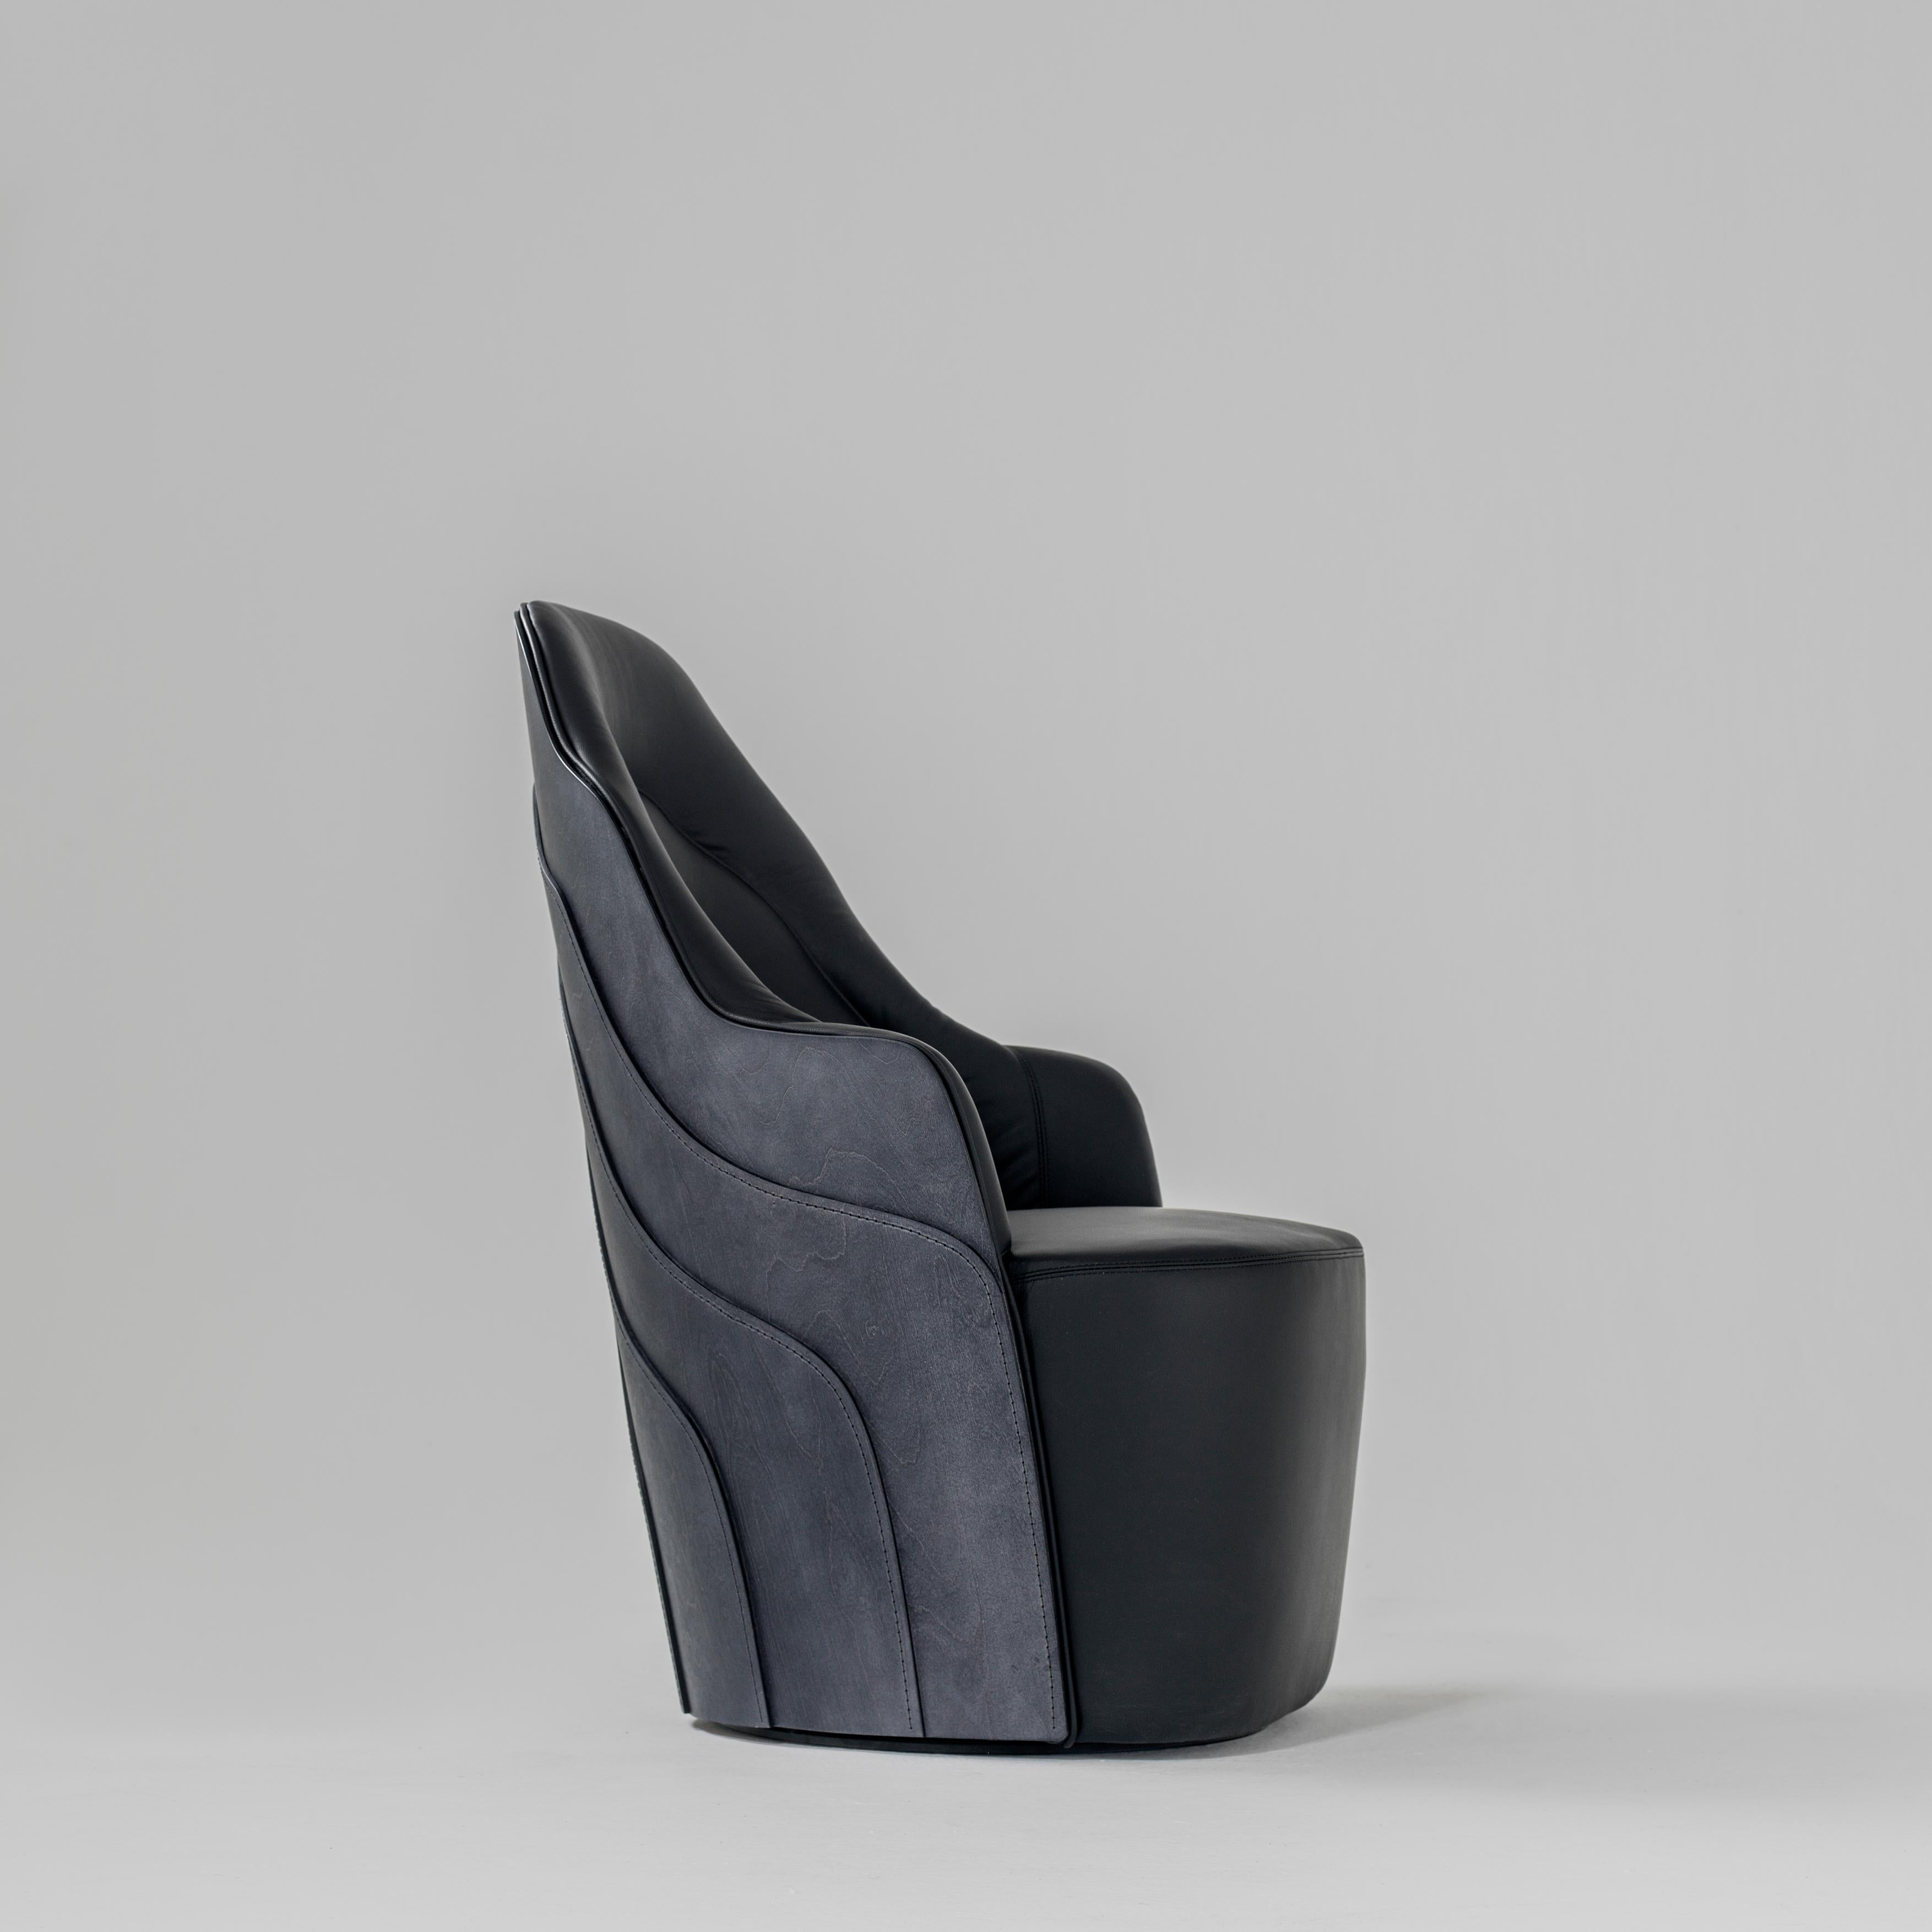 Sessel entworfen von Färg & Blanche hergestellt von BD Barcelona

Massive Holzstruktur und gepolsterter Sitz mit der Möglichkeit, ein Drehsystem in das Gestell zu integrieren. Rückenlehne aus Birkensperrholz, mit Polyamidfaden genäht. 

